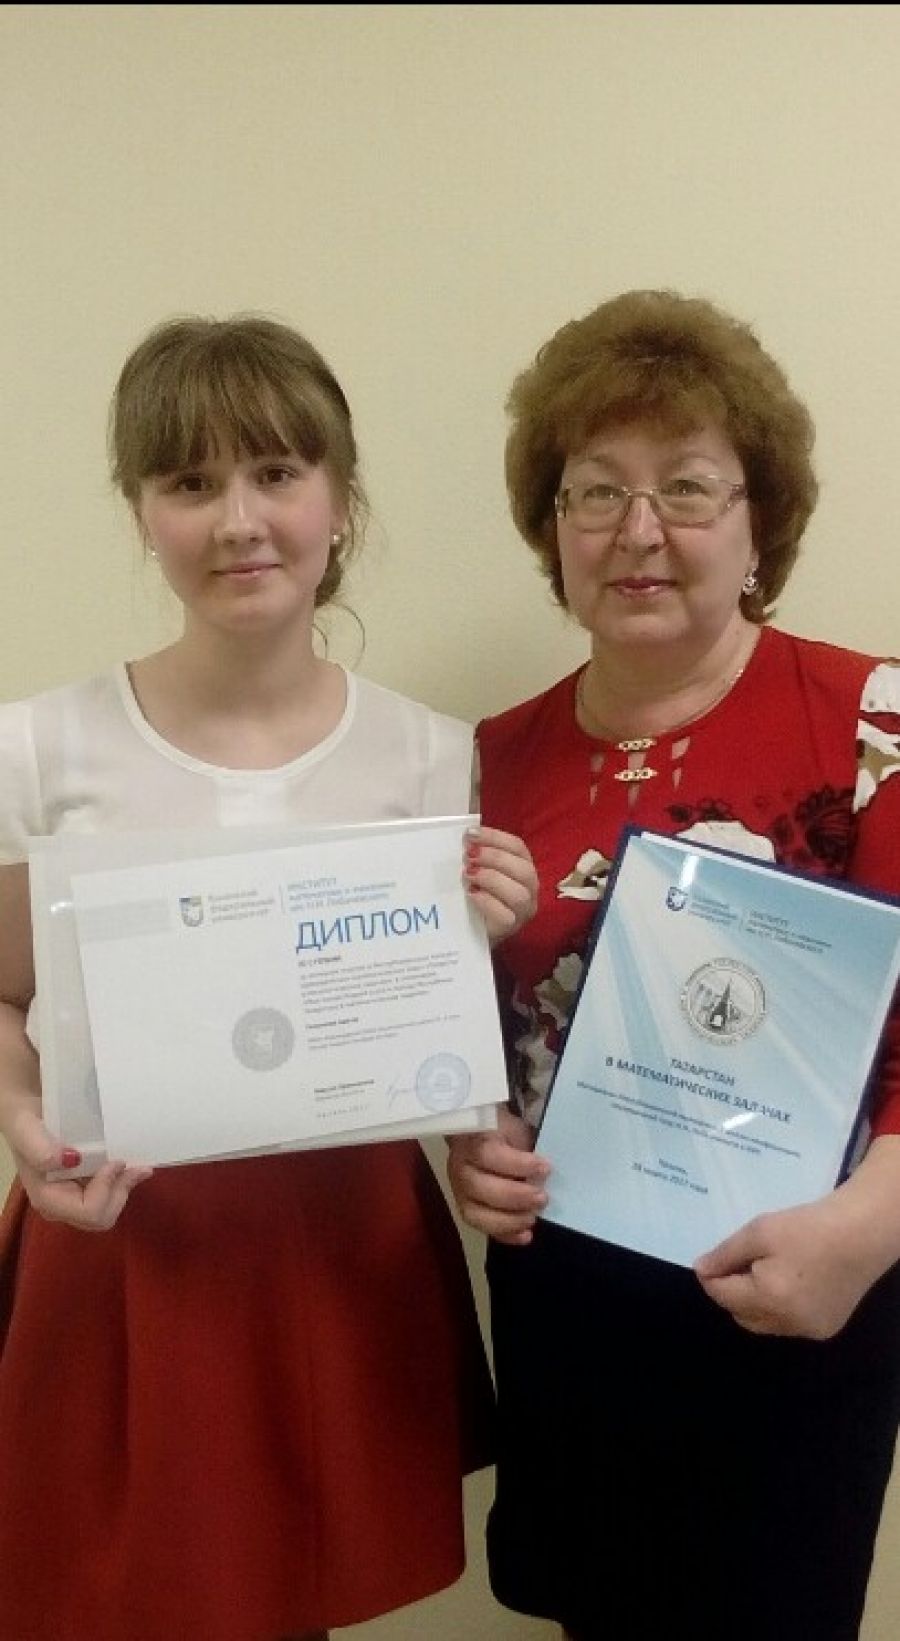 Школьница из Альметьевского района стала призером республиканского конкурса краеведческих математических задач